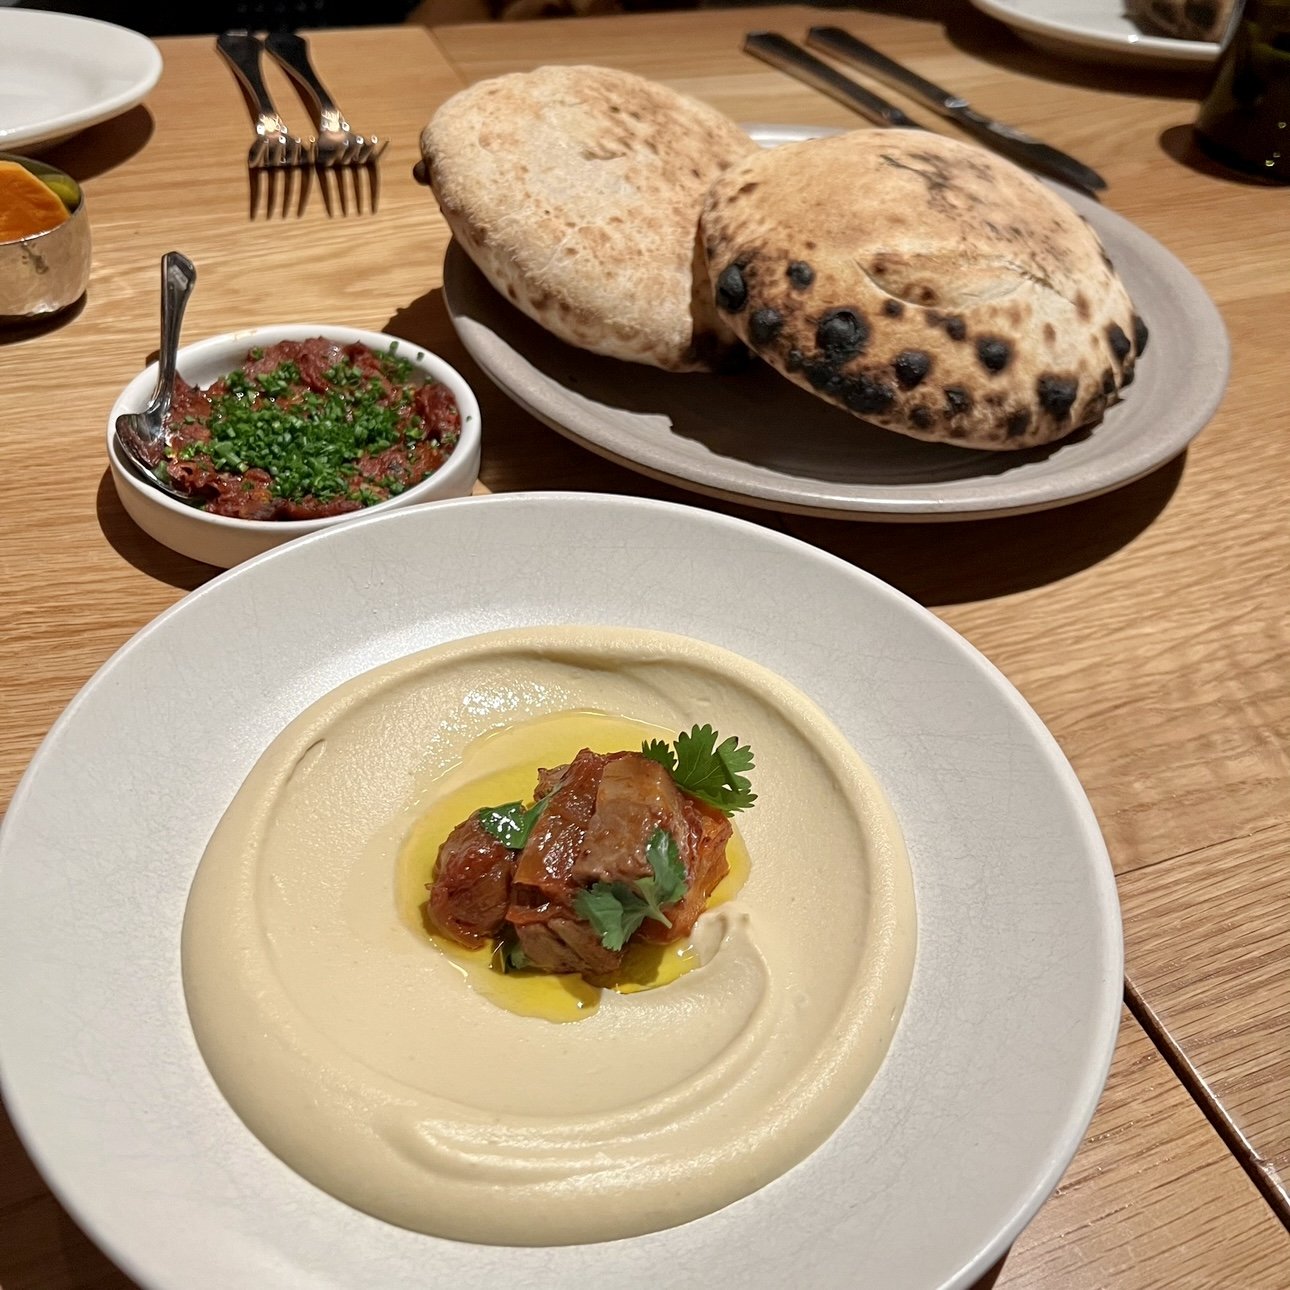 Bubbe’s Brisket Hummus